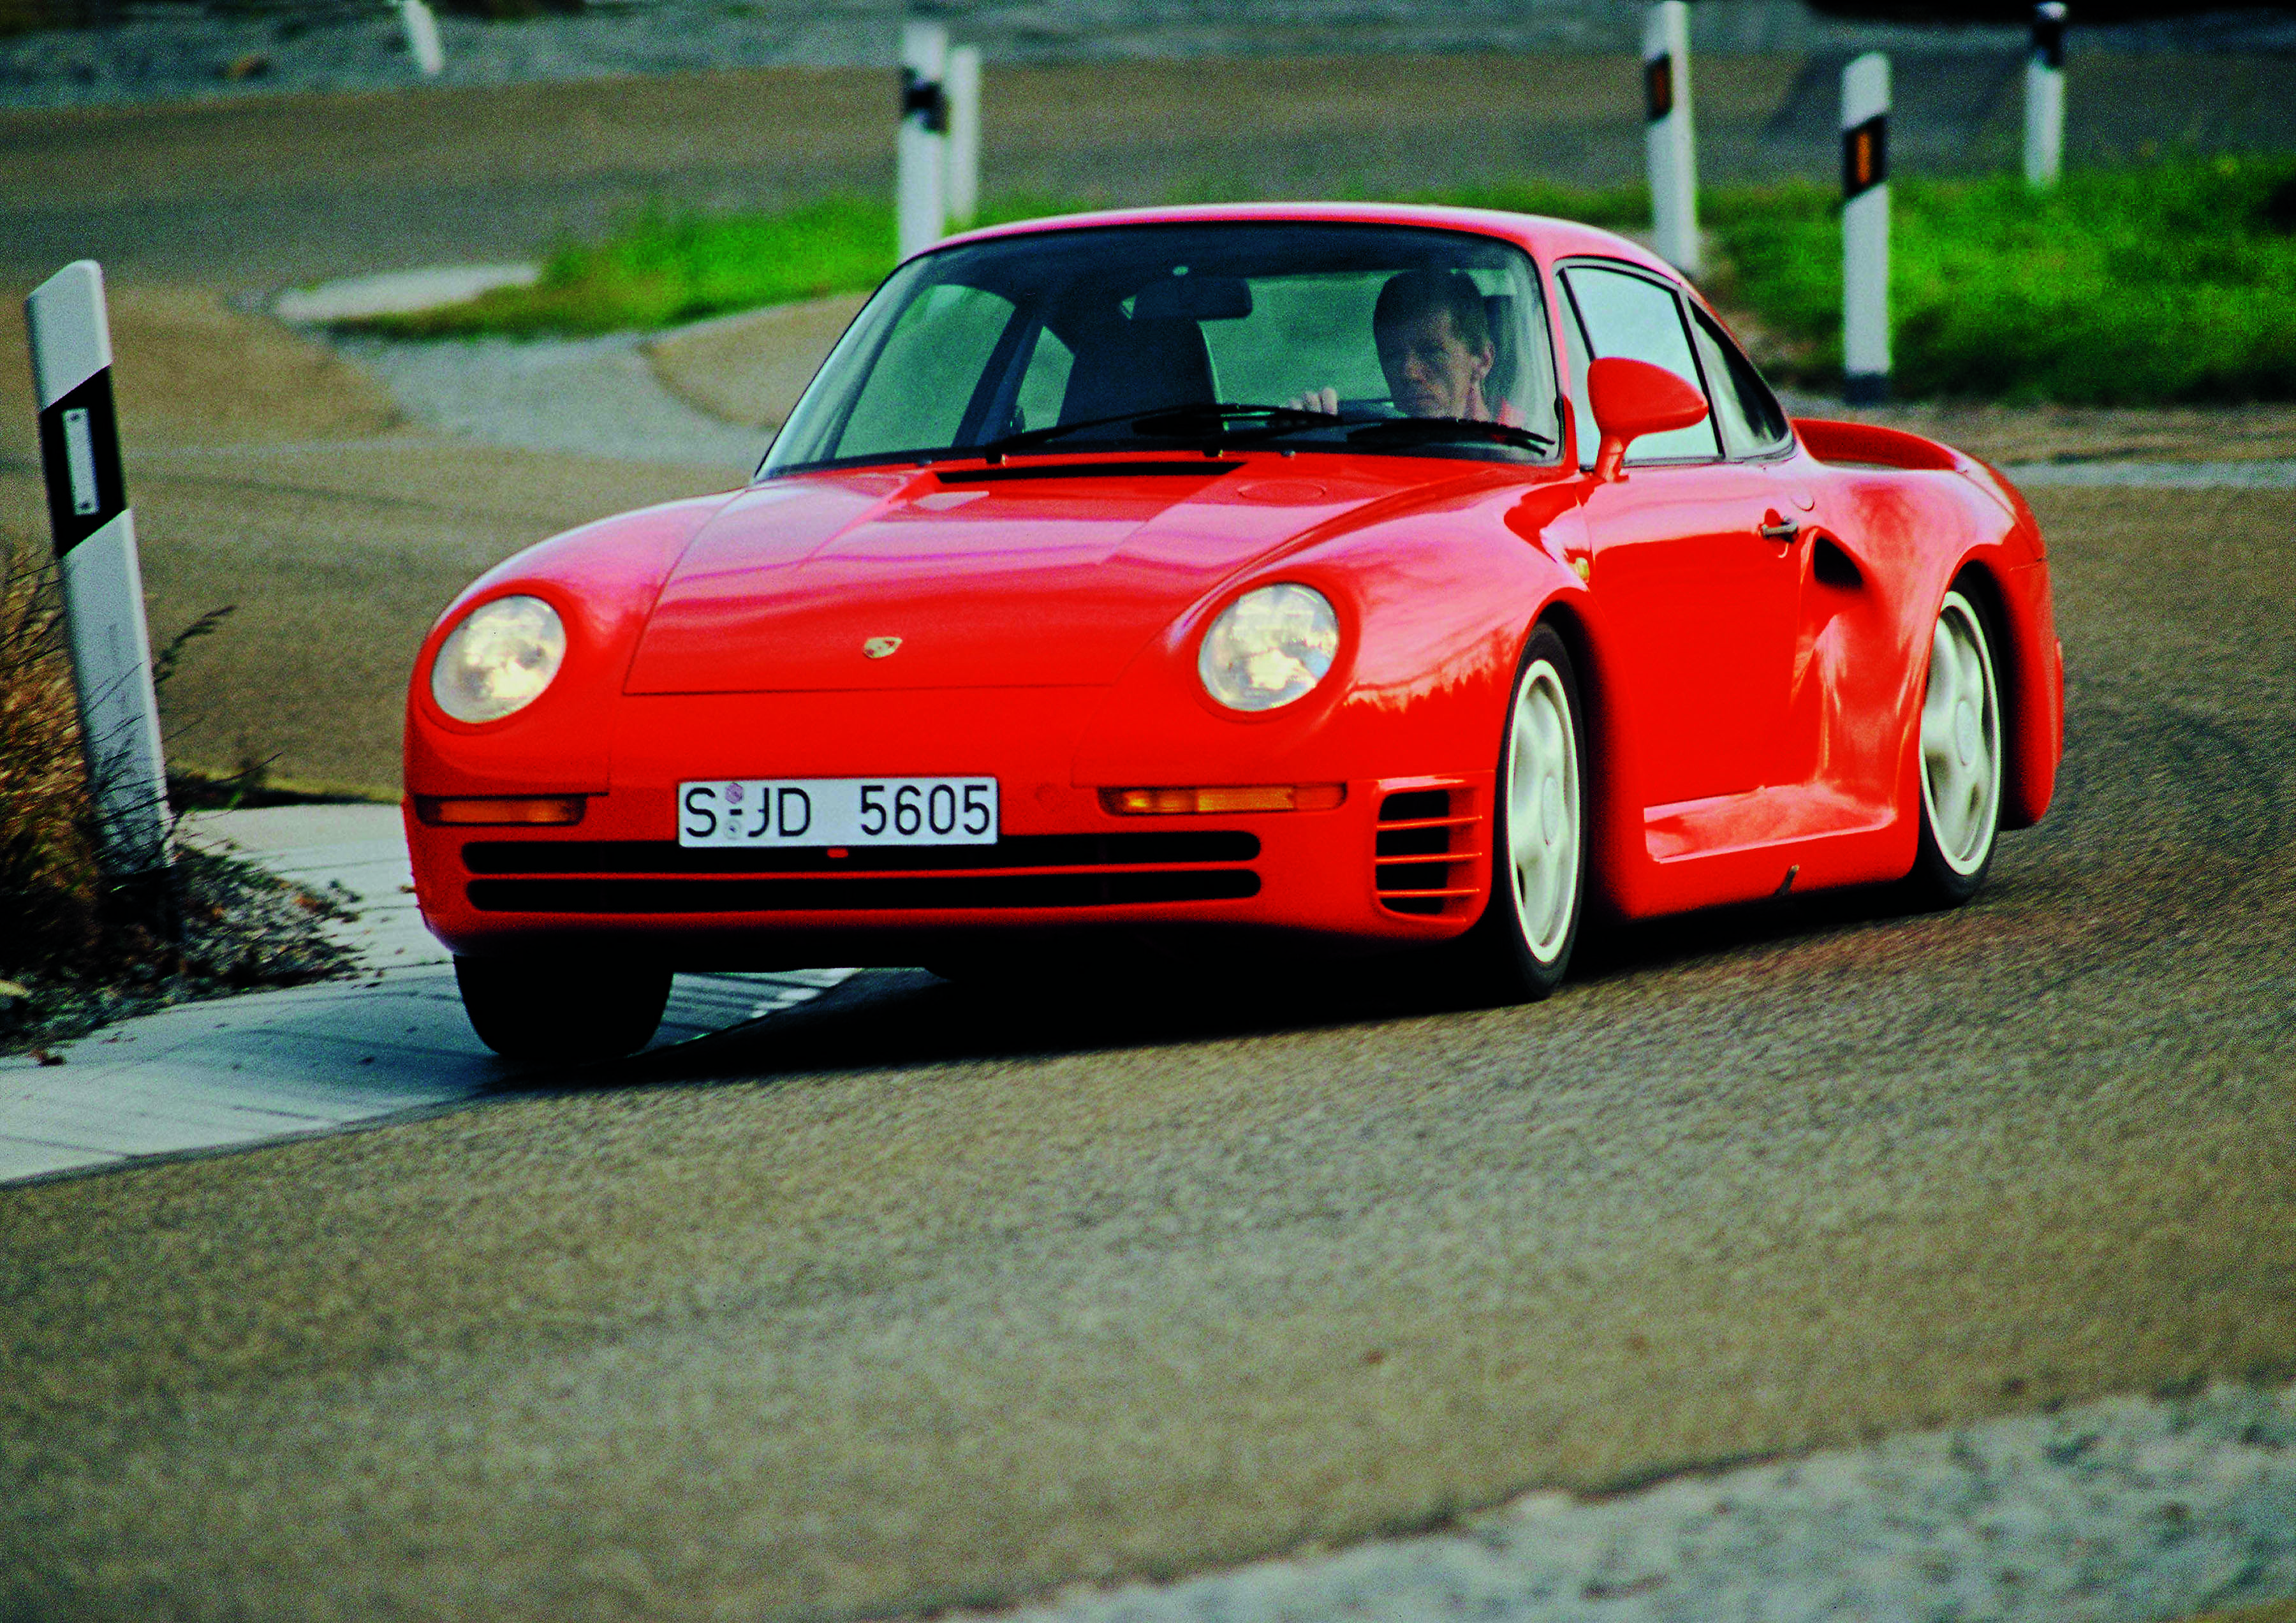 Red Porsche 959 cornering, Walter Röhrl at the wheel